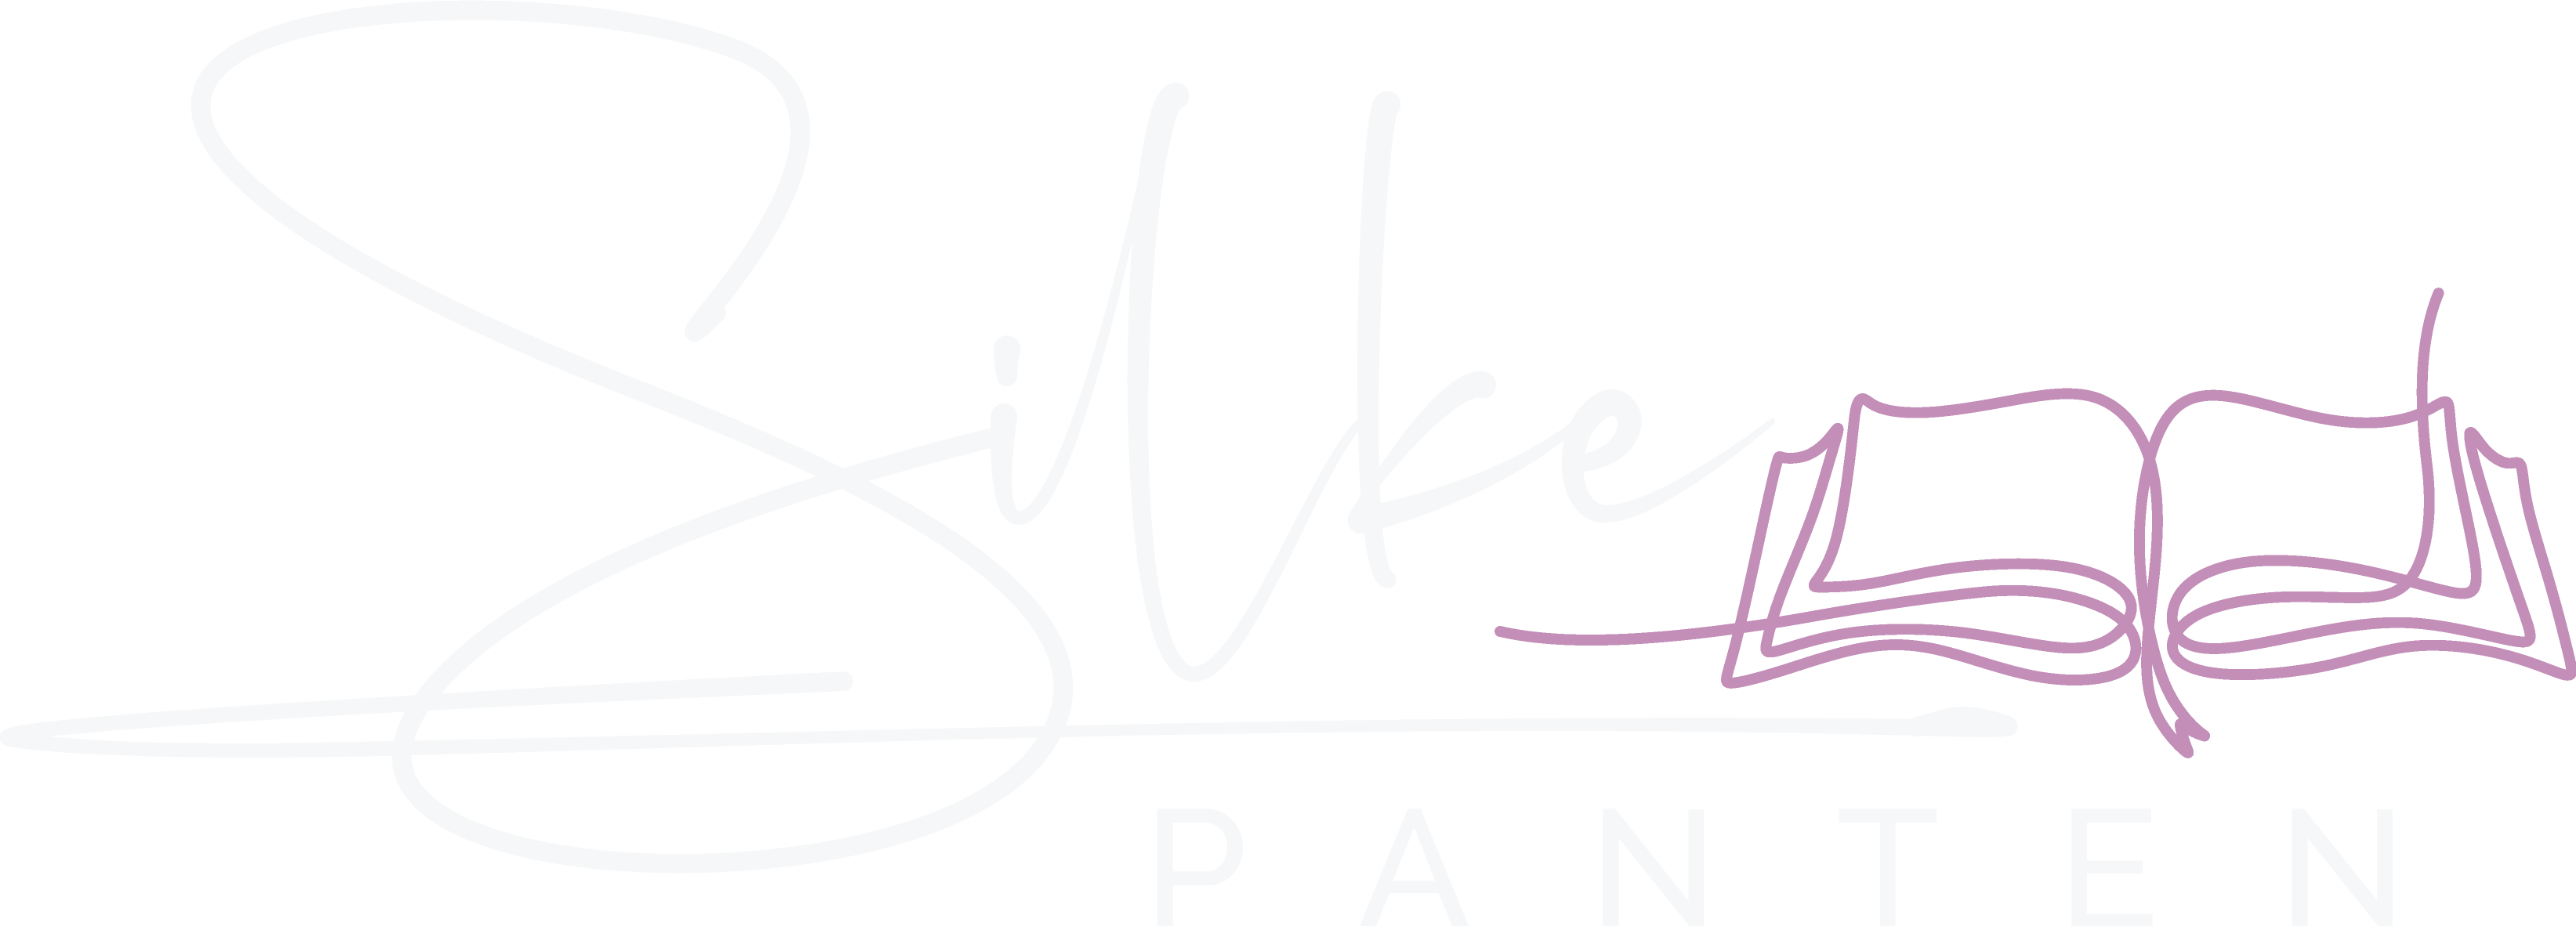 Silke Panten